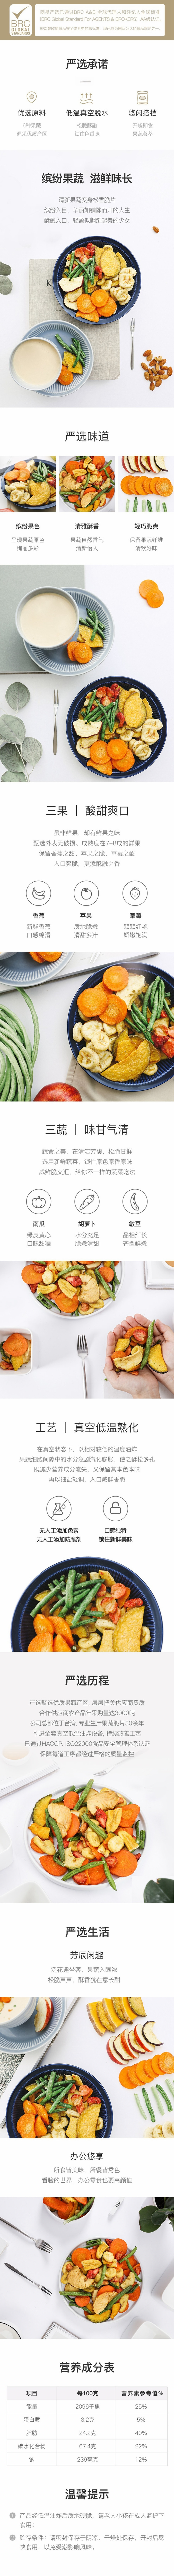 【中国直邮】网易严选 综合果蔬脆 100克 (1袋装) 蔬菜干水果干零食休闲小吃